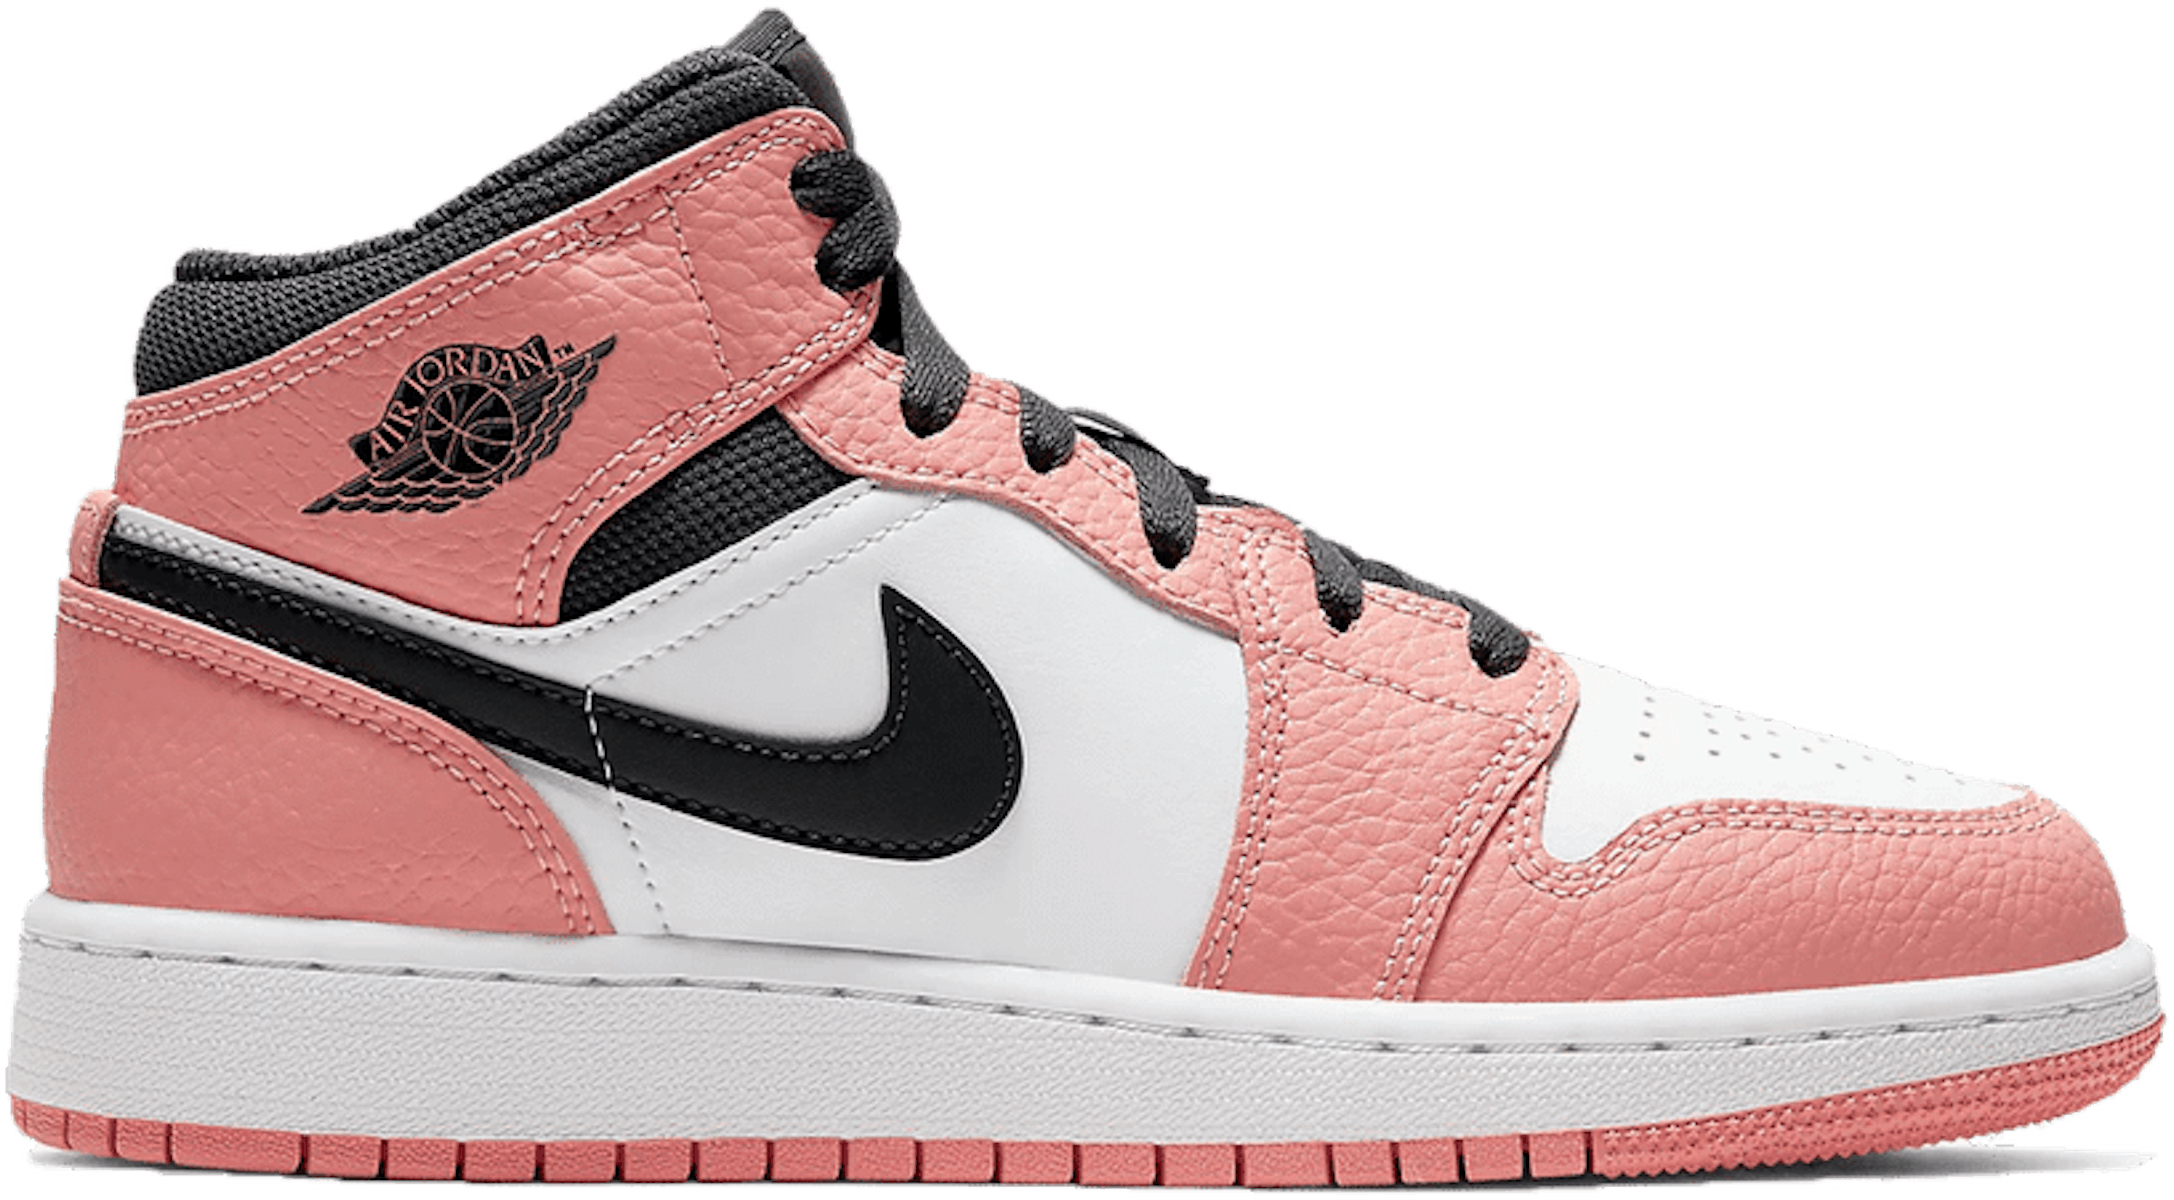 Air Jordan 1 Mid GS "Pink Quartz" | 555112-603 | Sneaker Squad